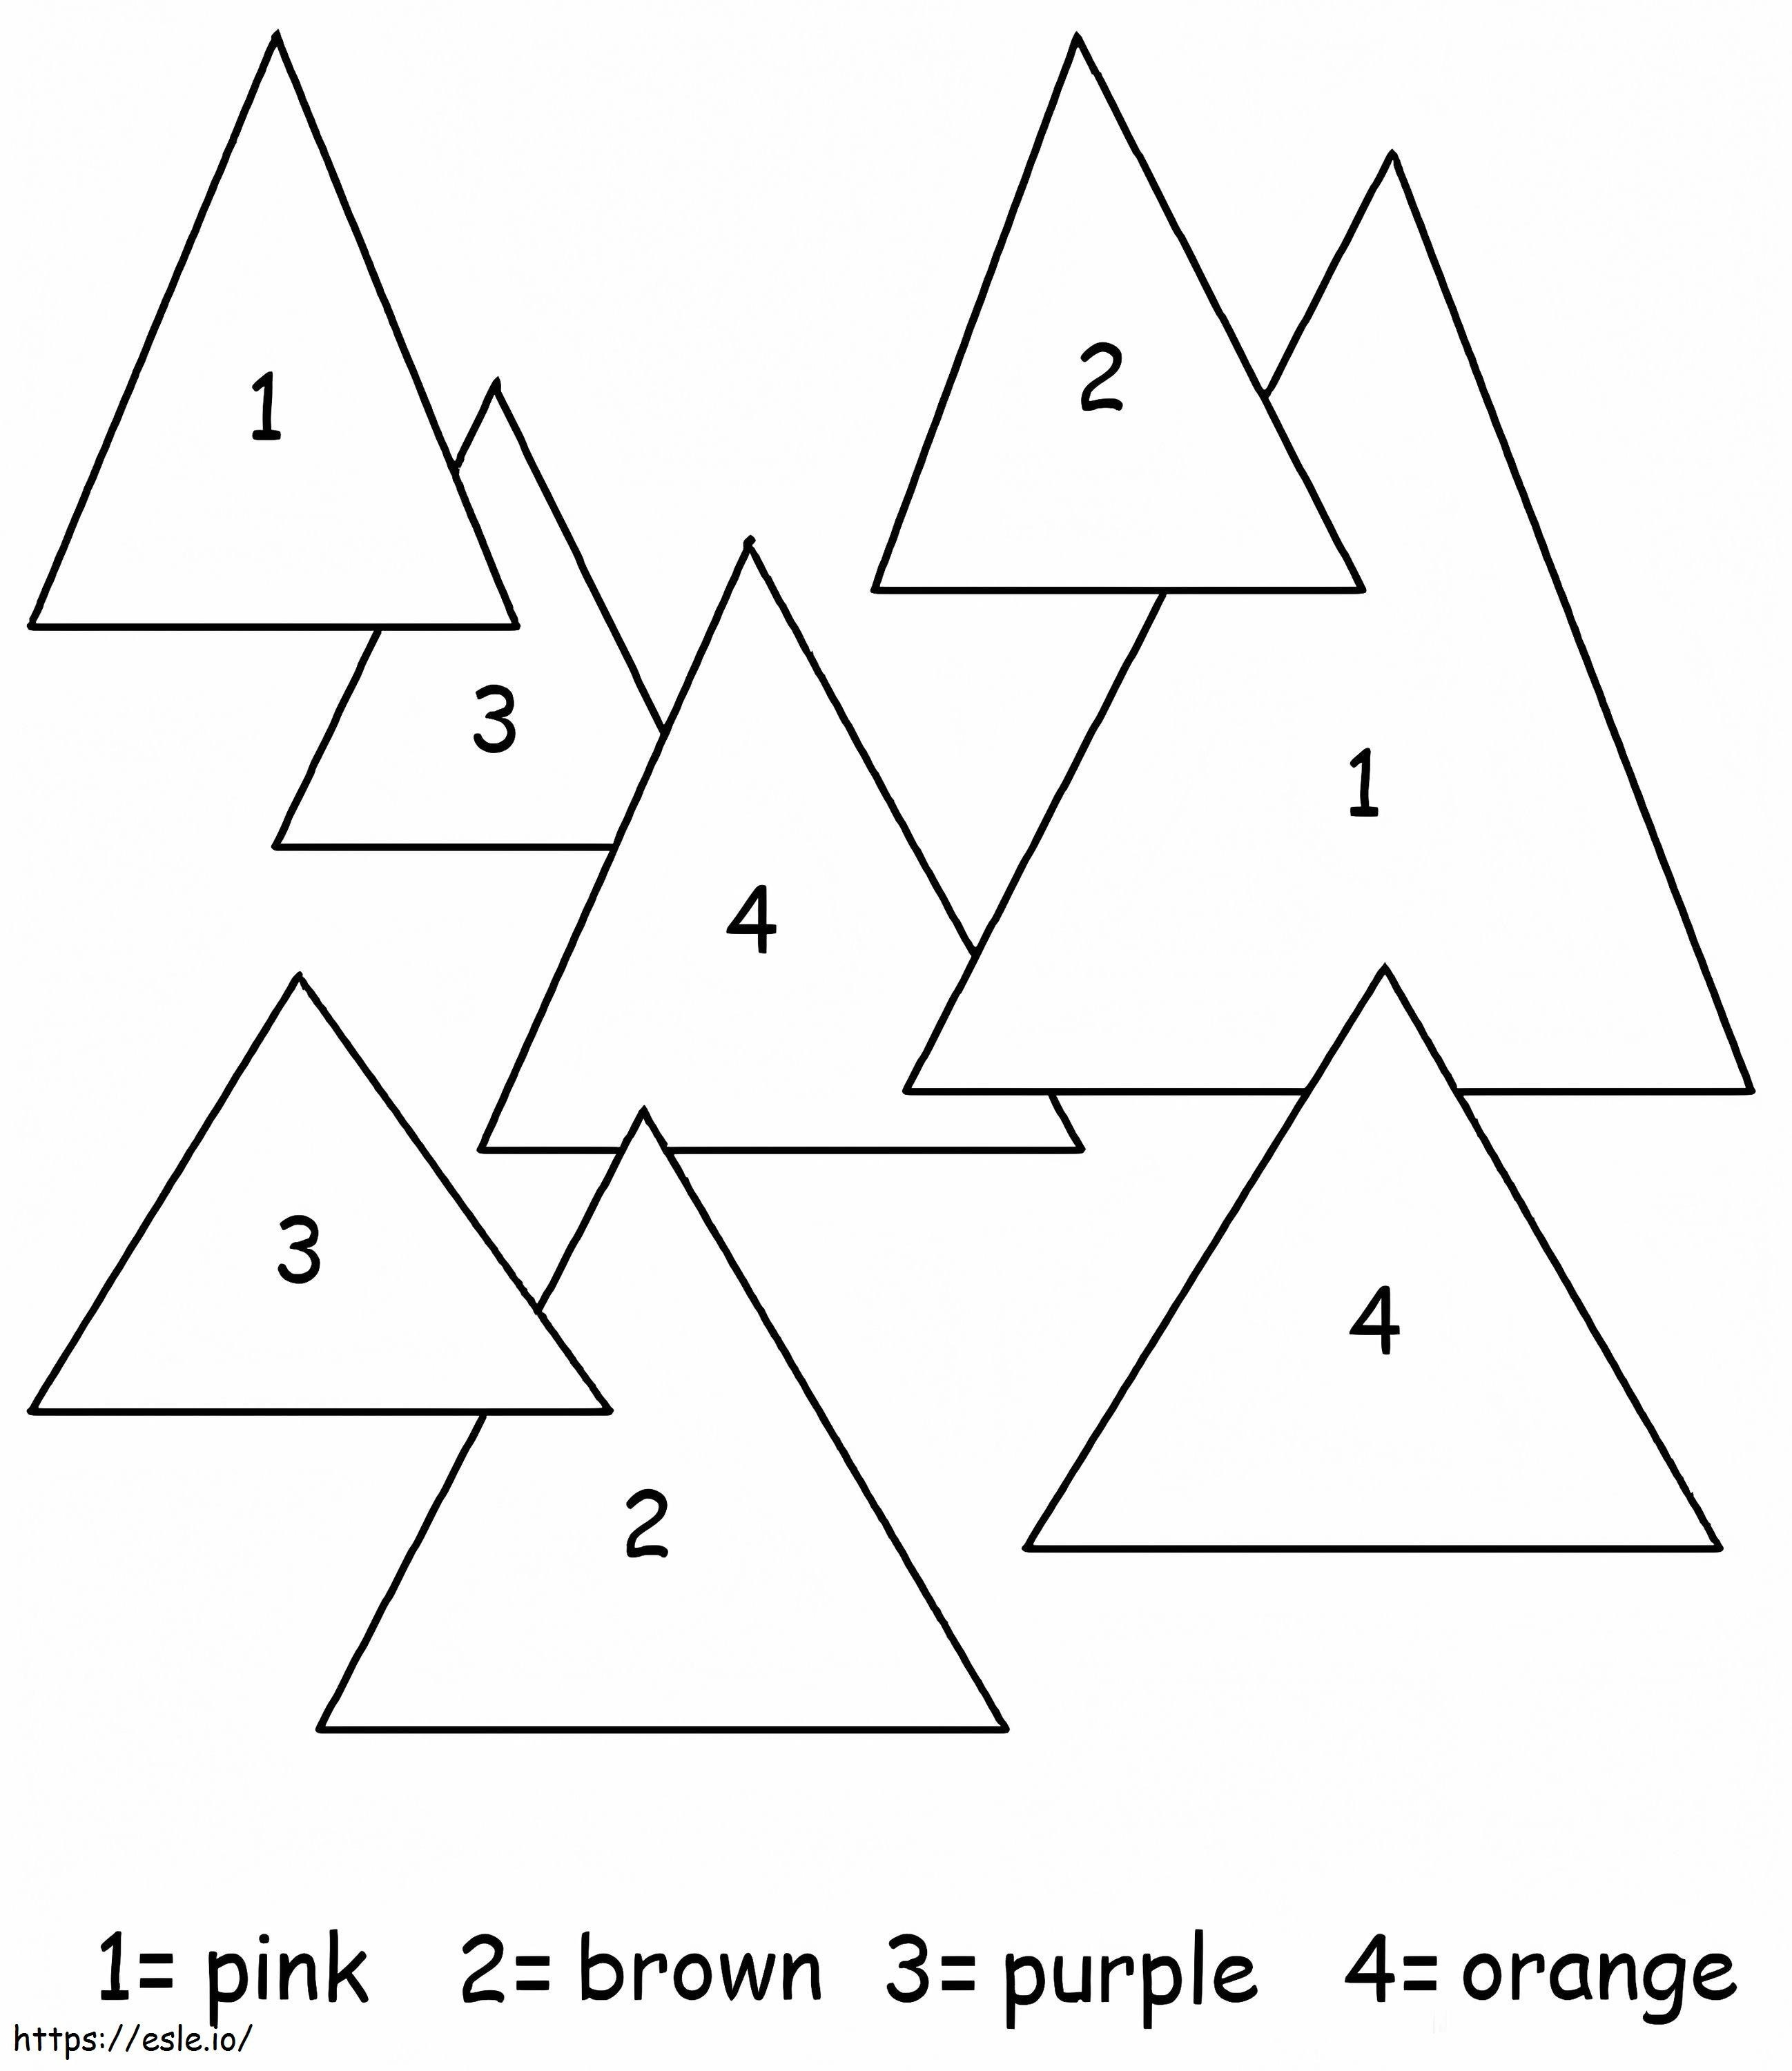 Łatwe kolorowanie trójkąta według numeru kolorowanka